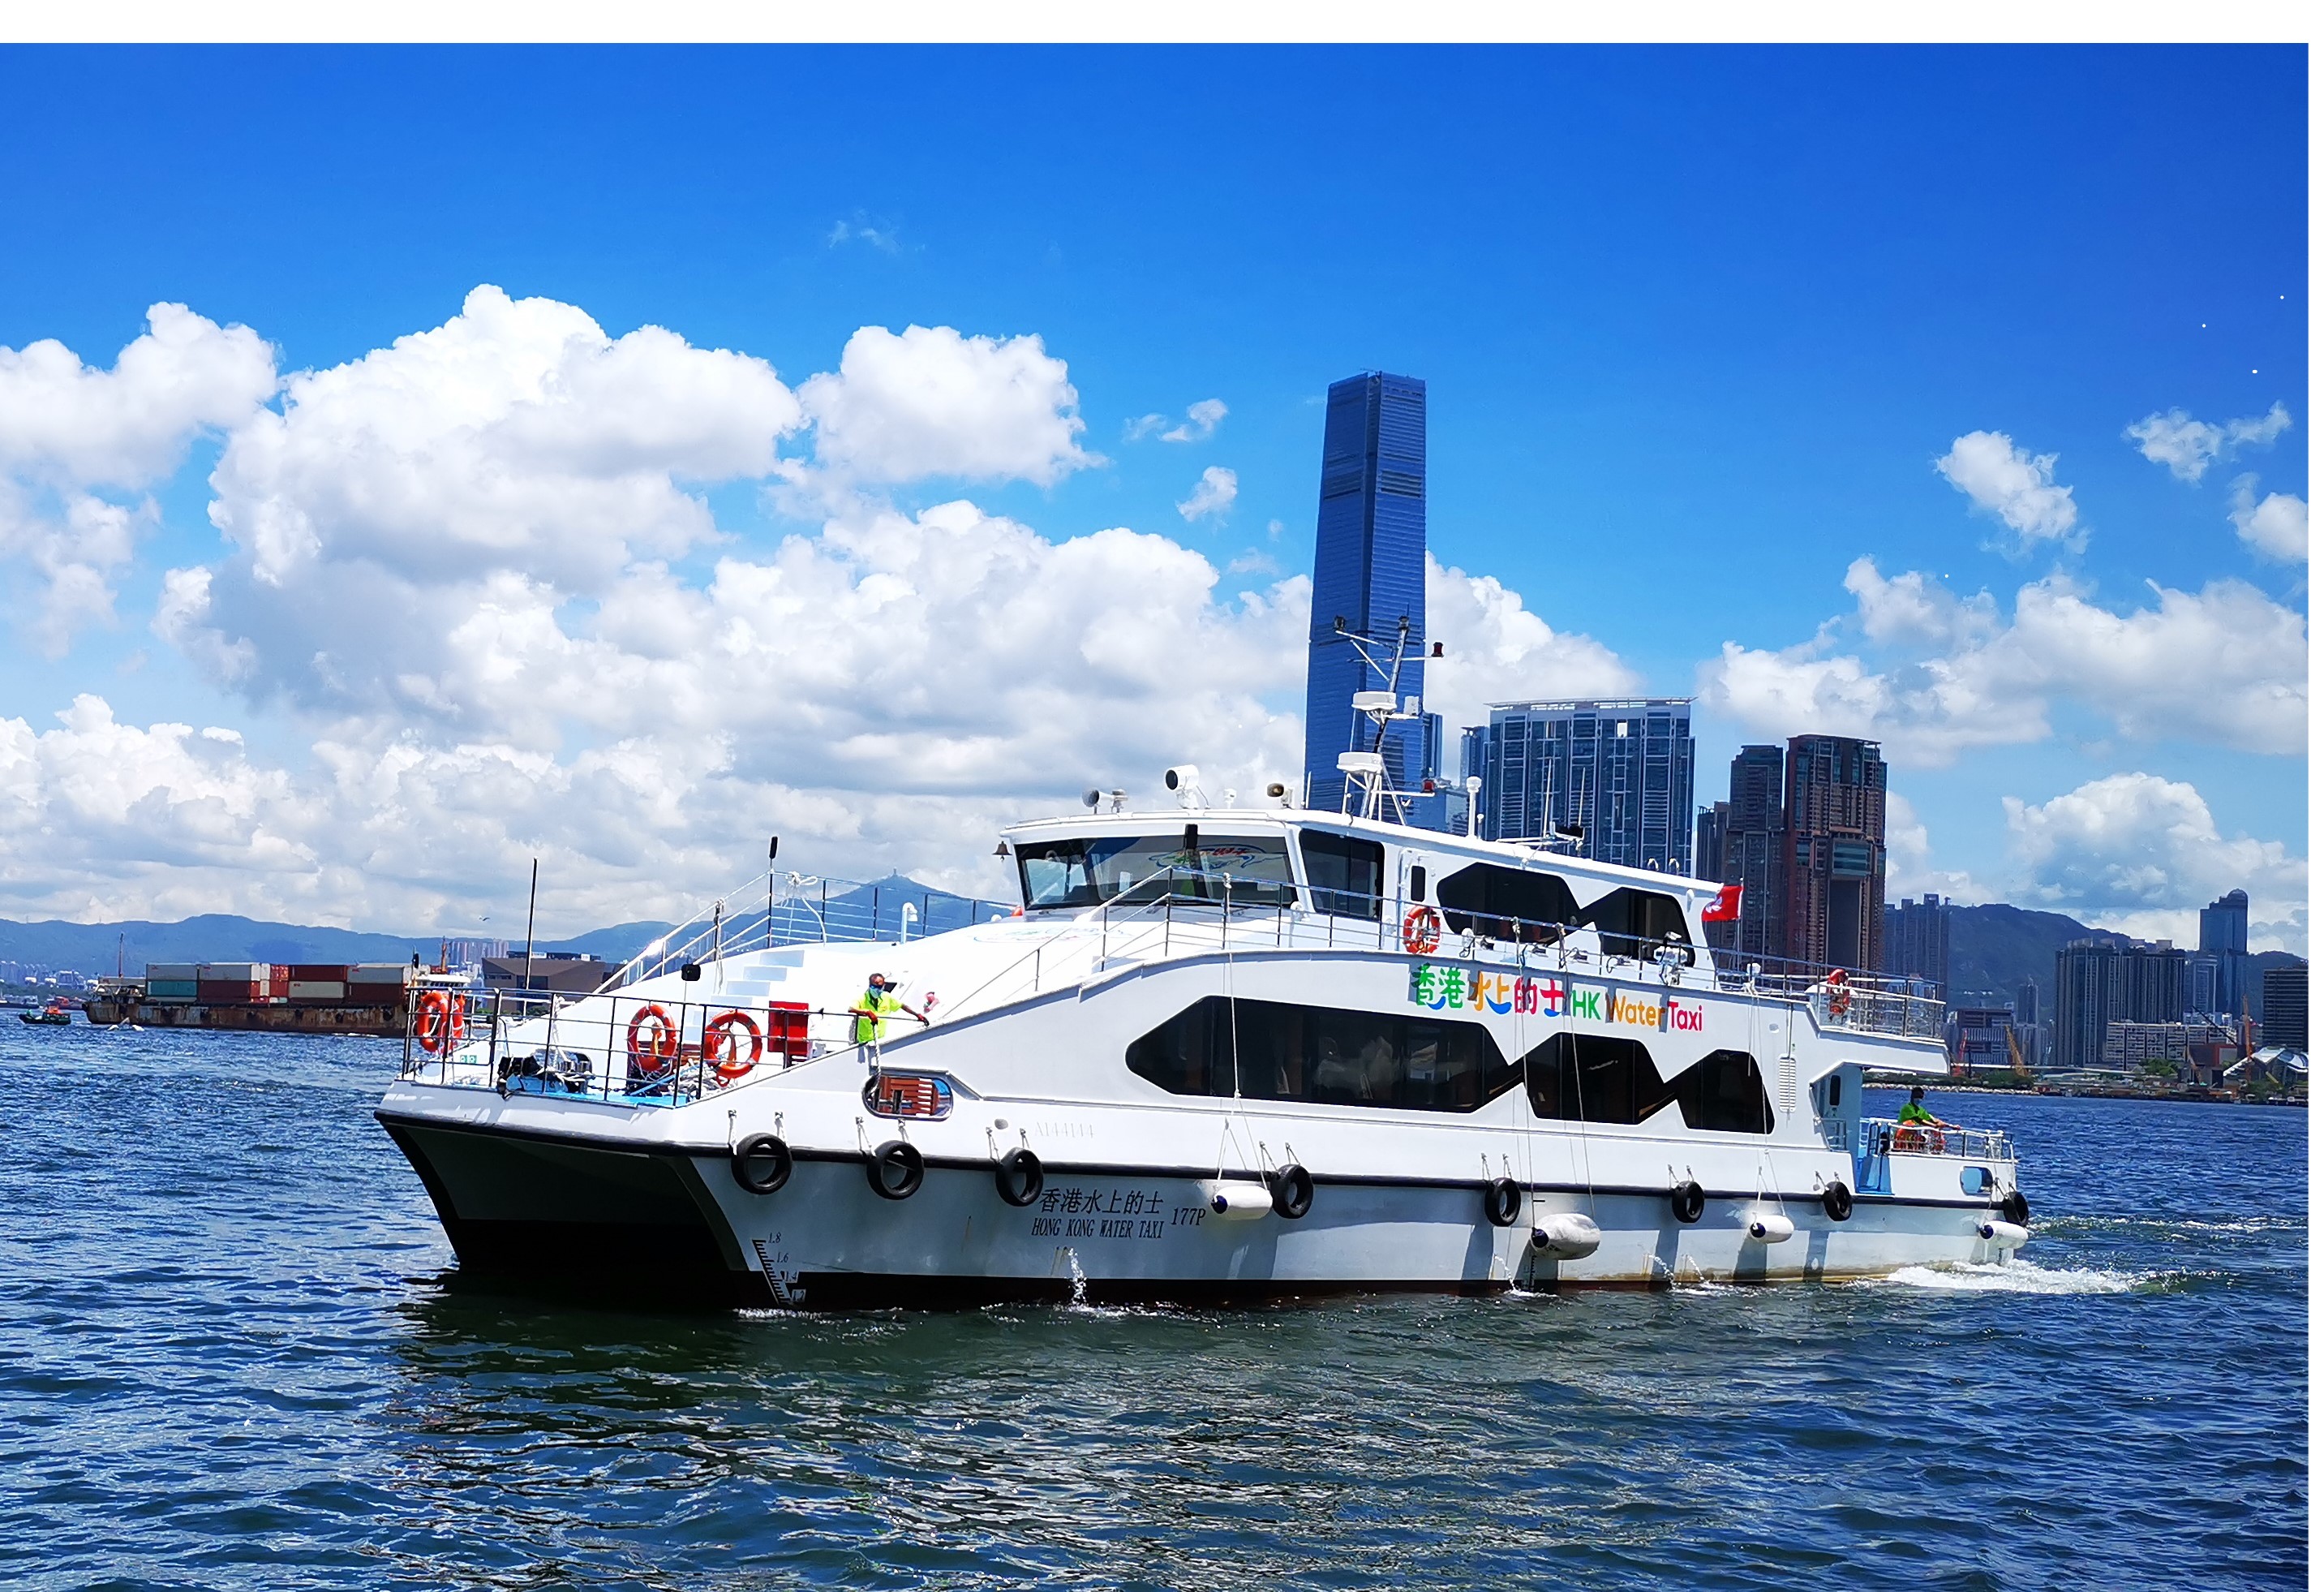 Hong Kong Water Taxi